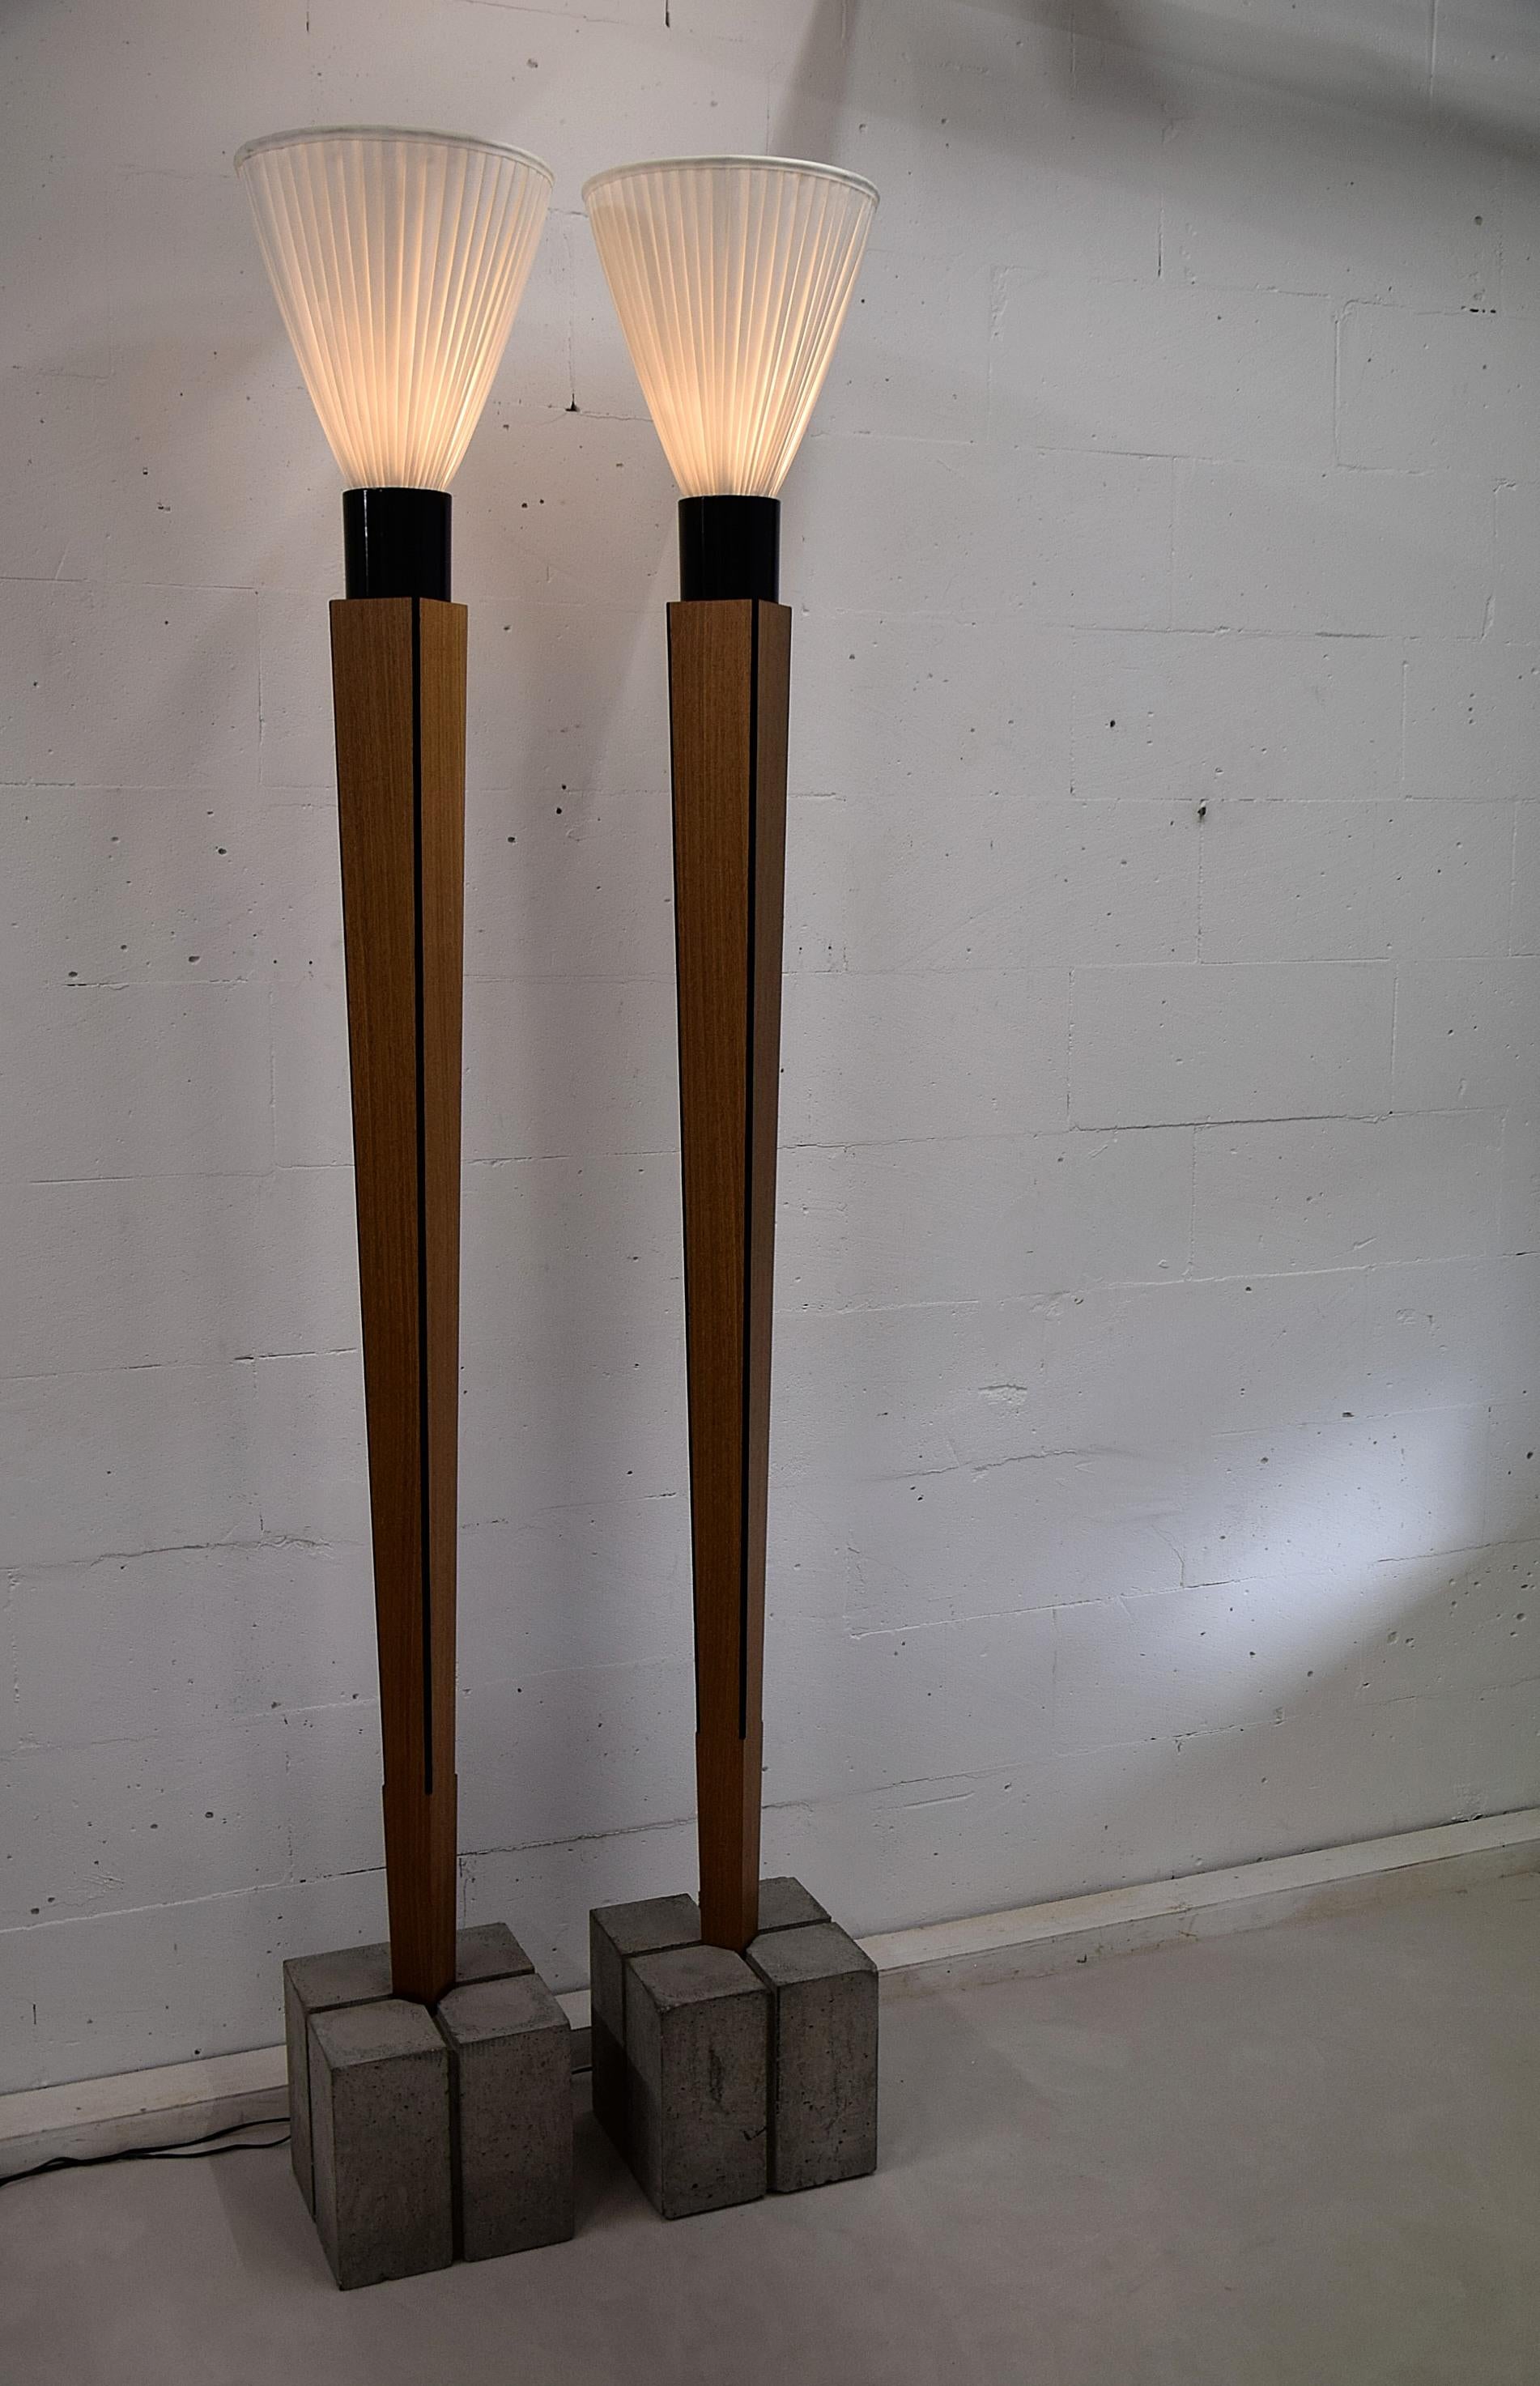 Steel Art Deco Floor Lamps with a Twist